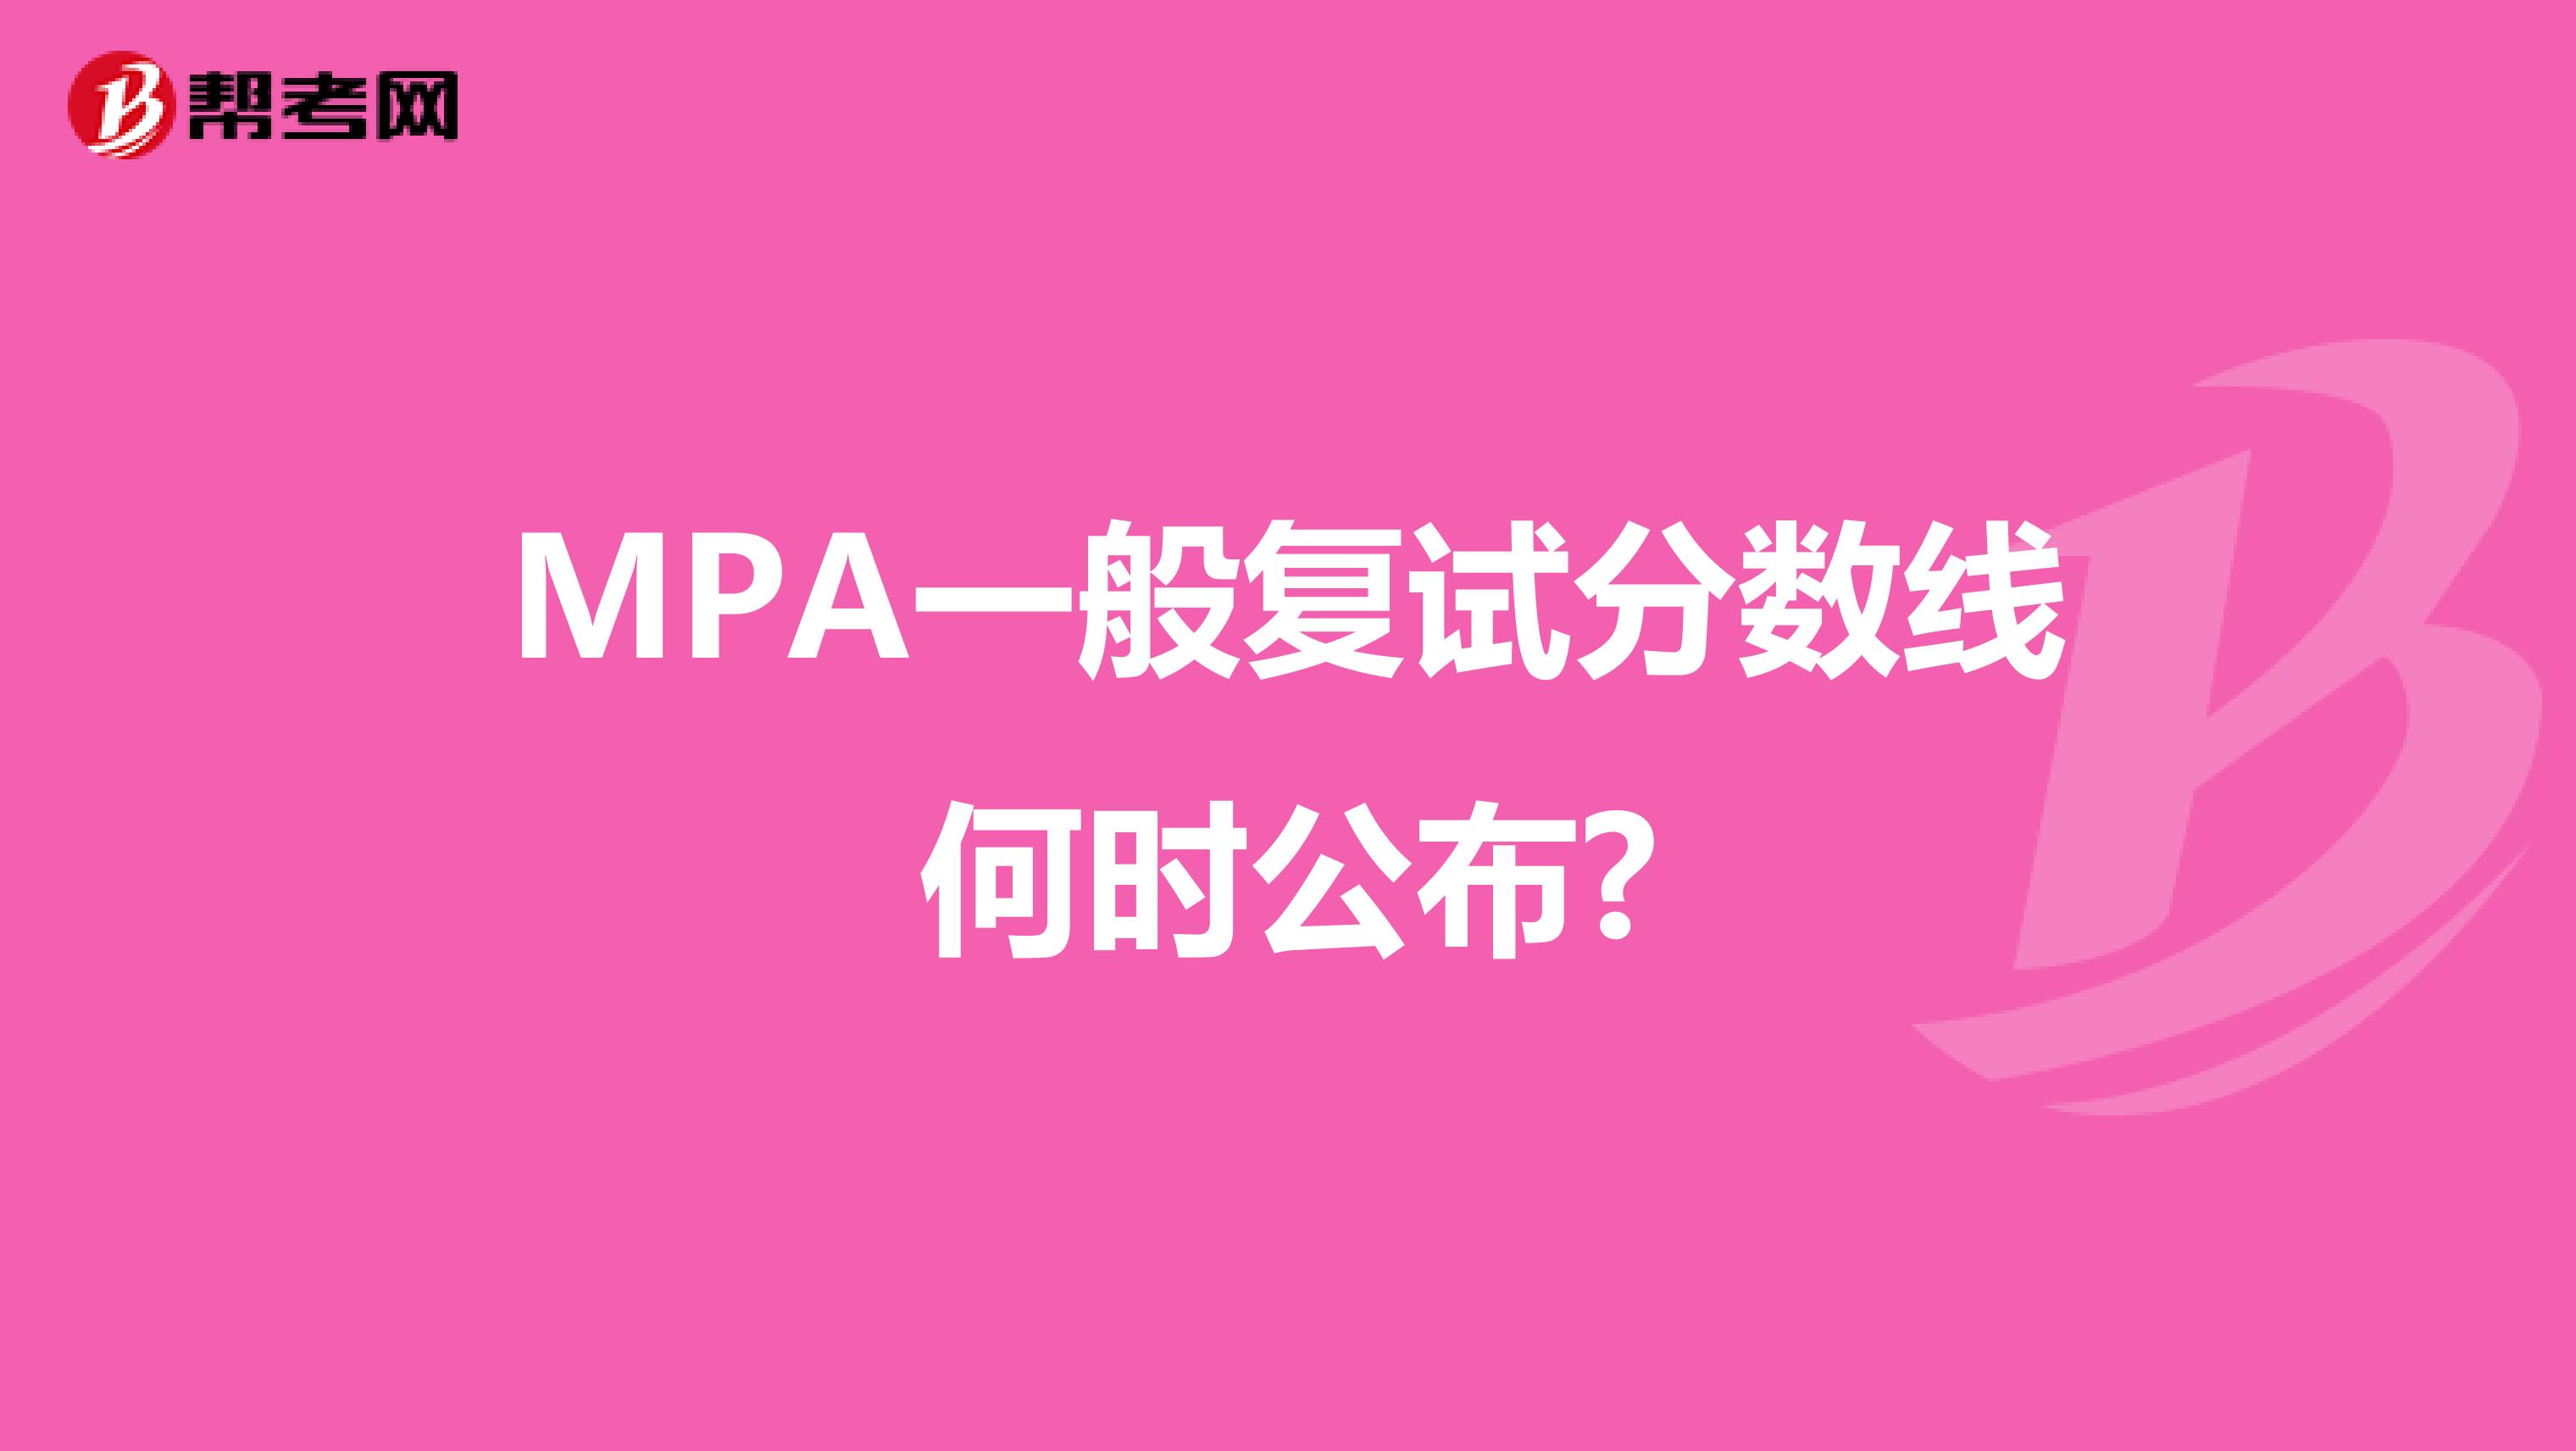 MPA一般复试分数线何时公布?